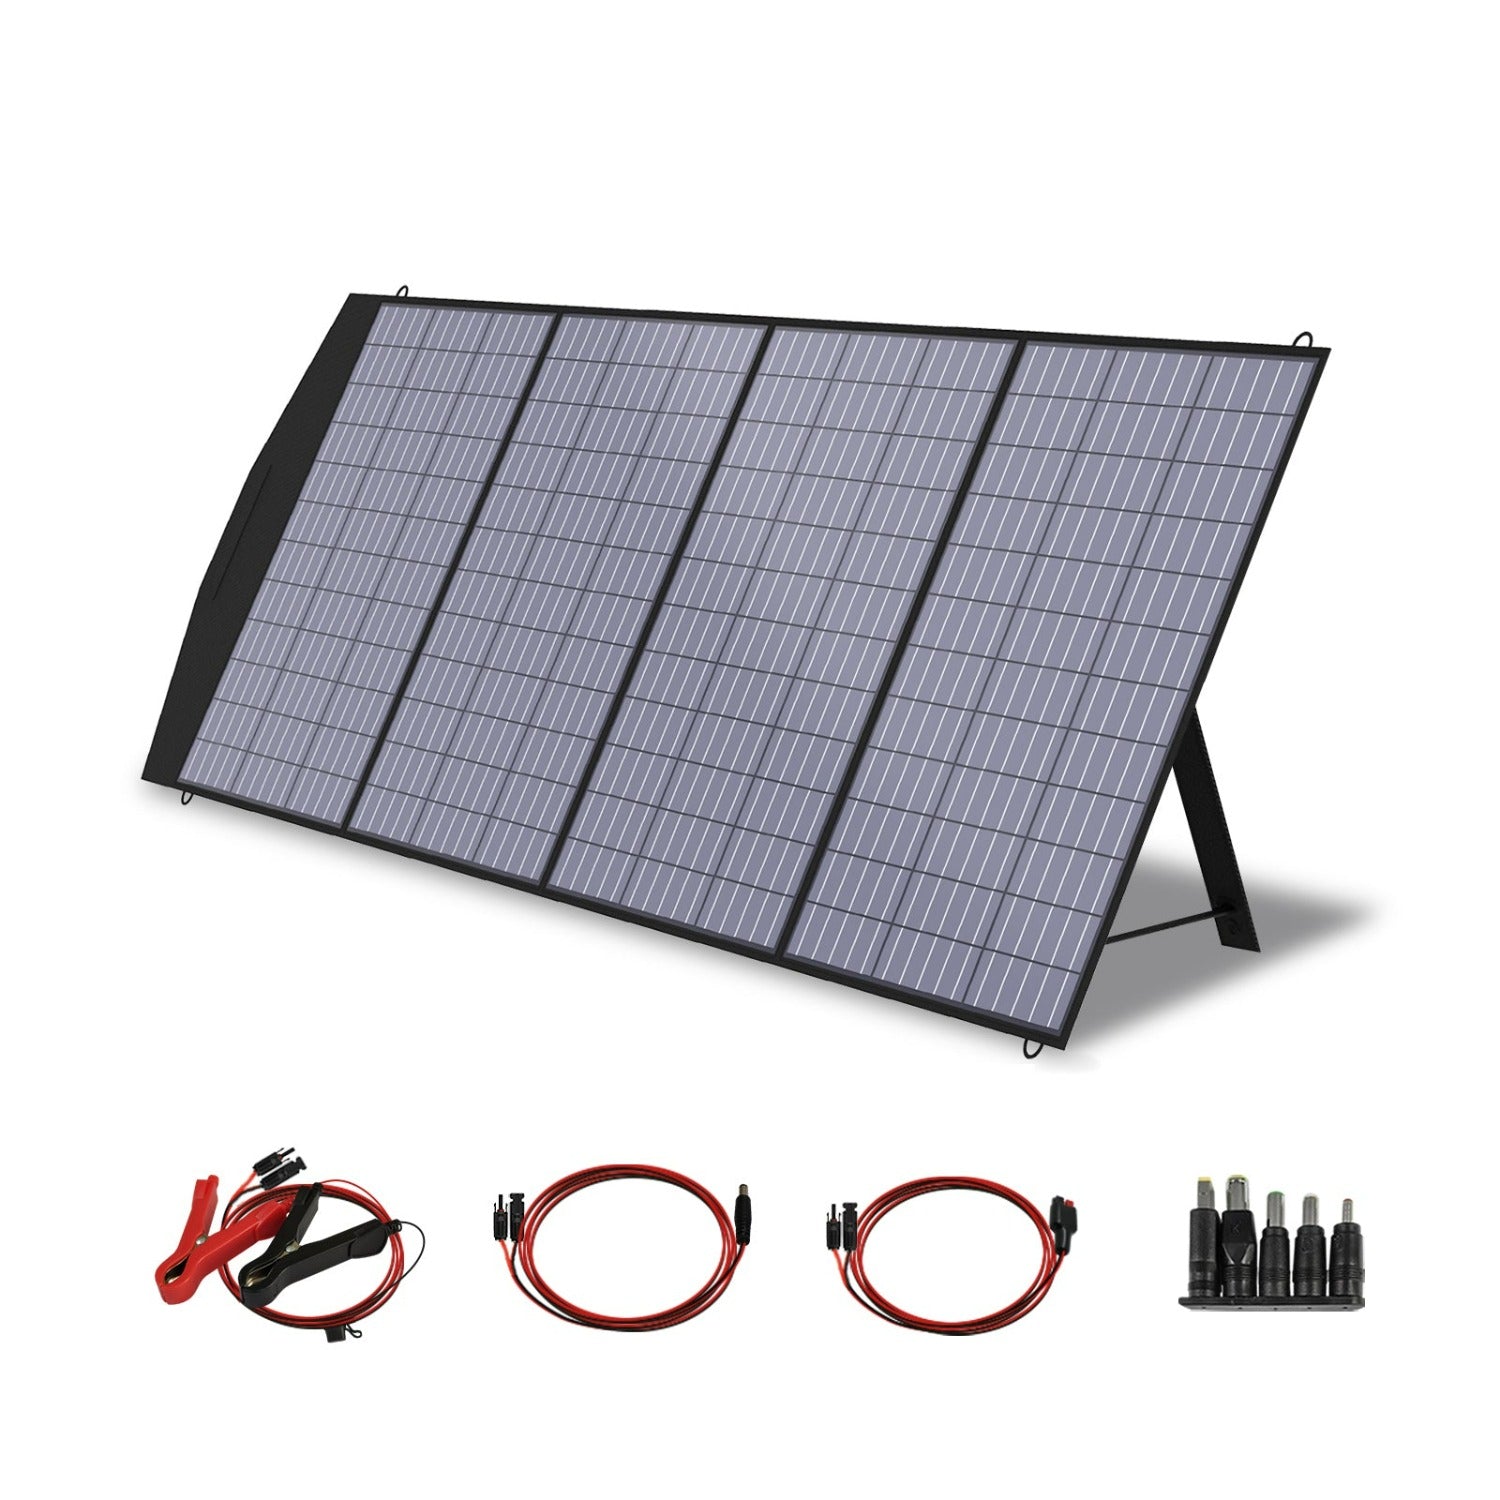 Panneau solaire portable ALLPOWERS SP033 200W (cellules polycristallines) 